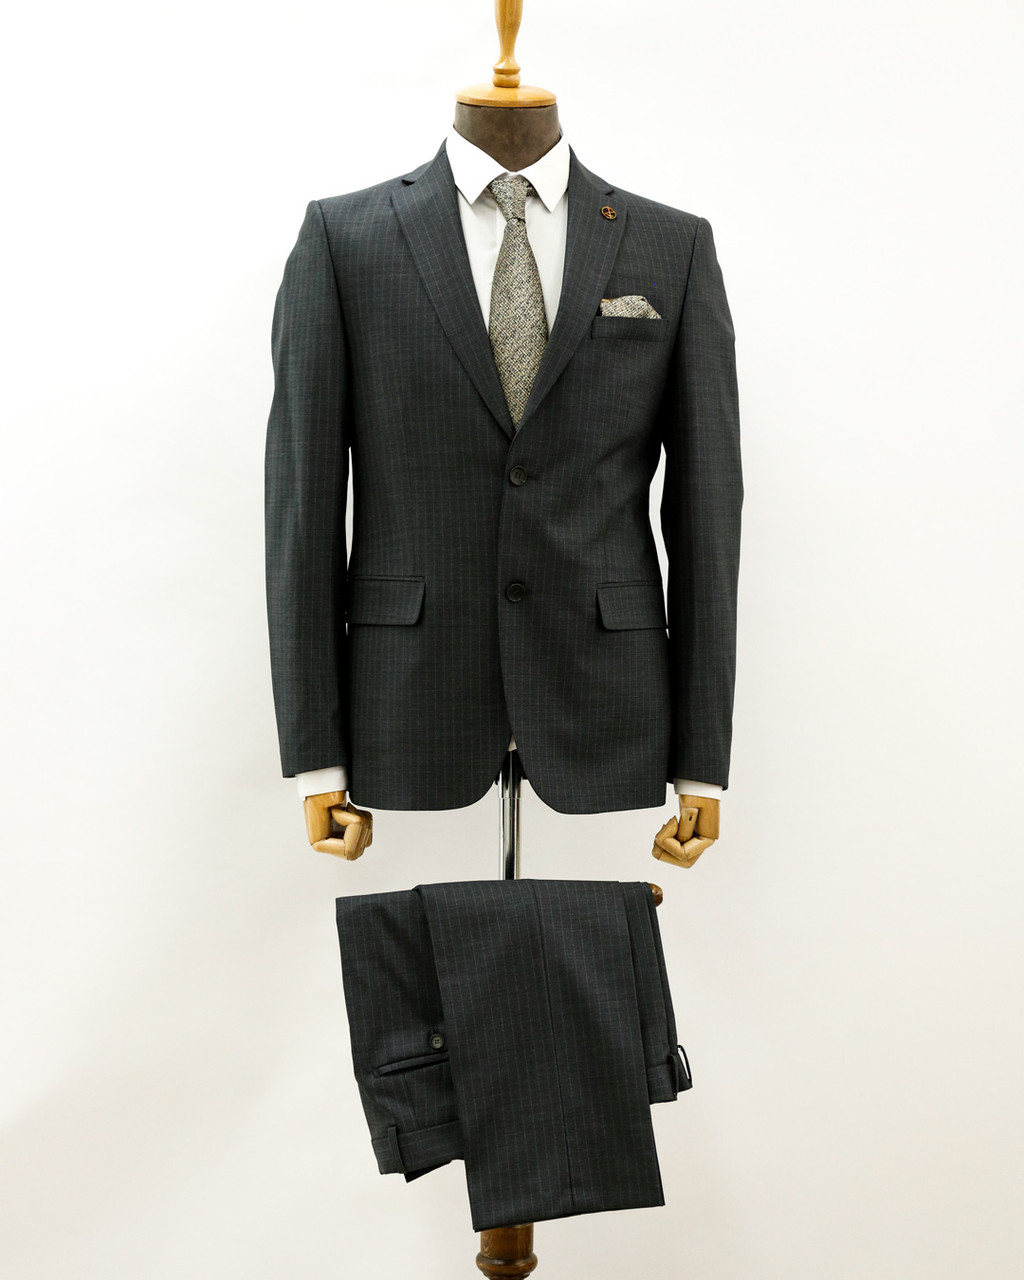 Мужской классический костюм «UM&H 57552173» серый, фото 1